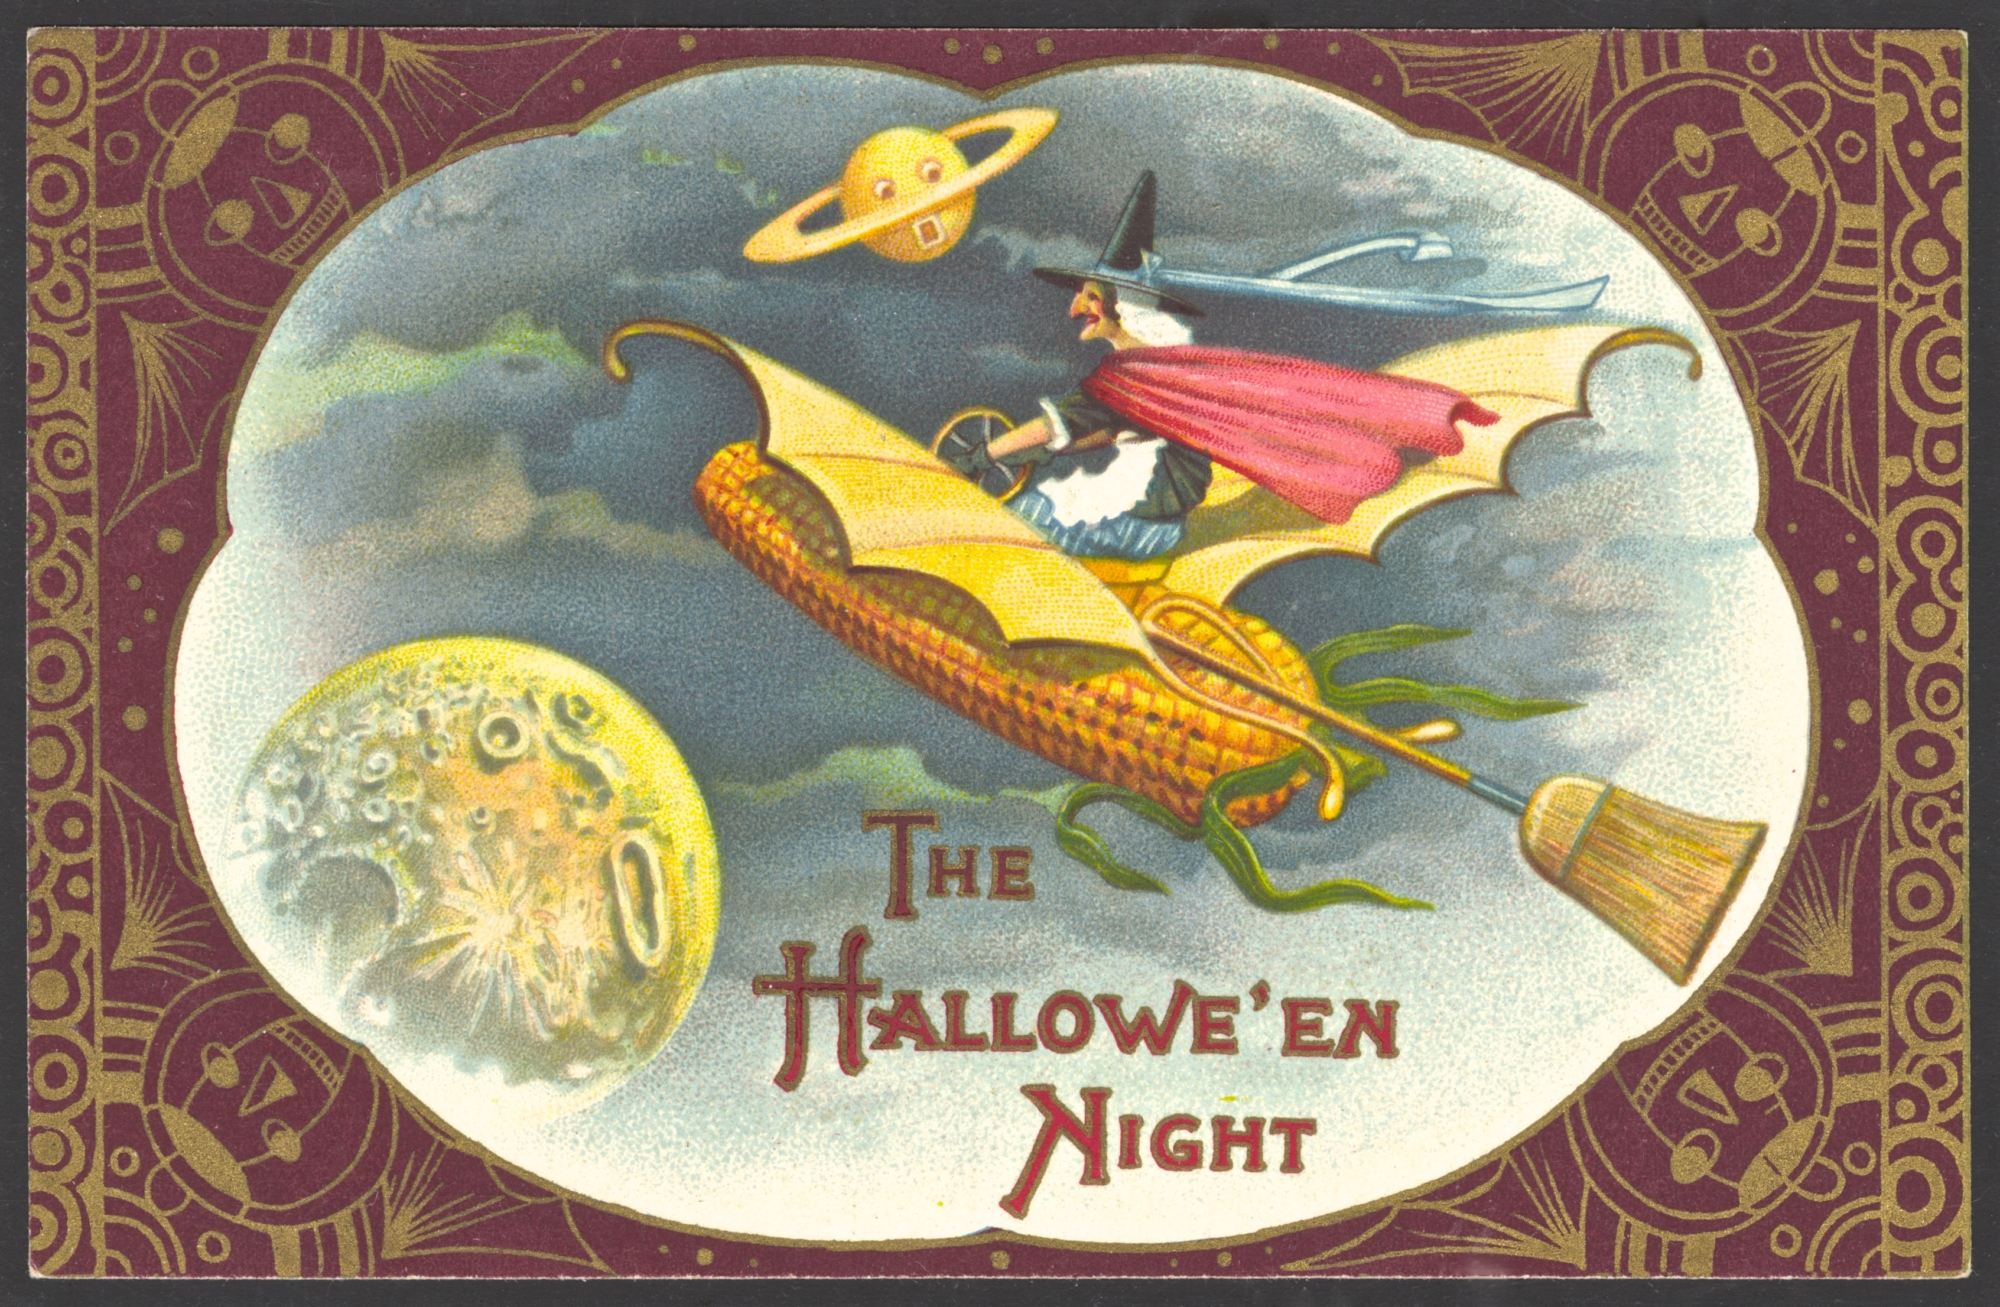 Winsch Halloween Postcard variety - no copyright